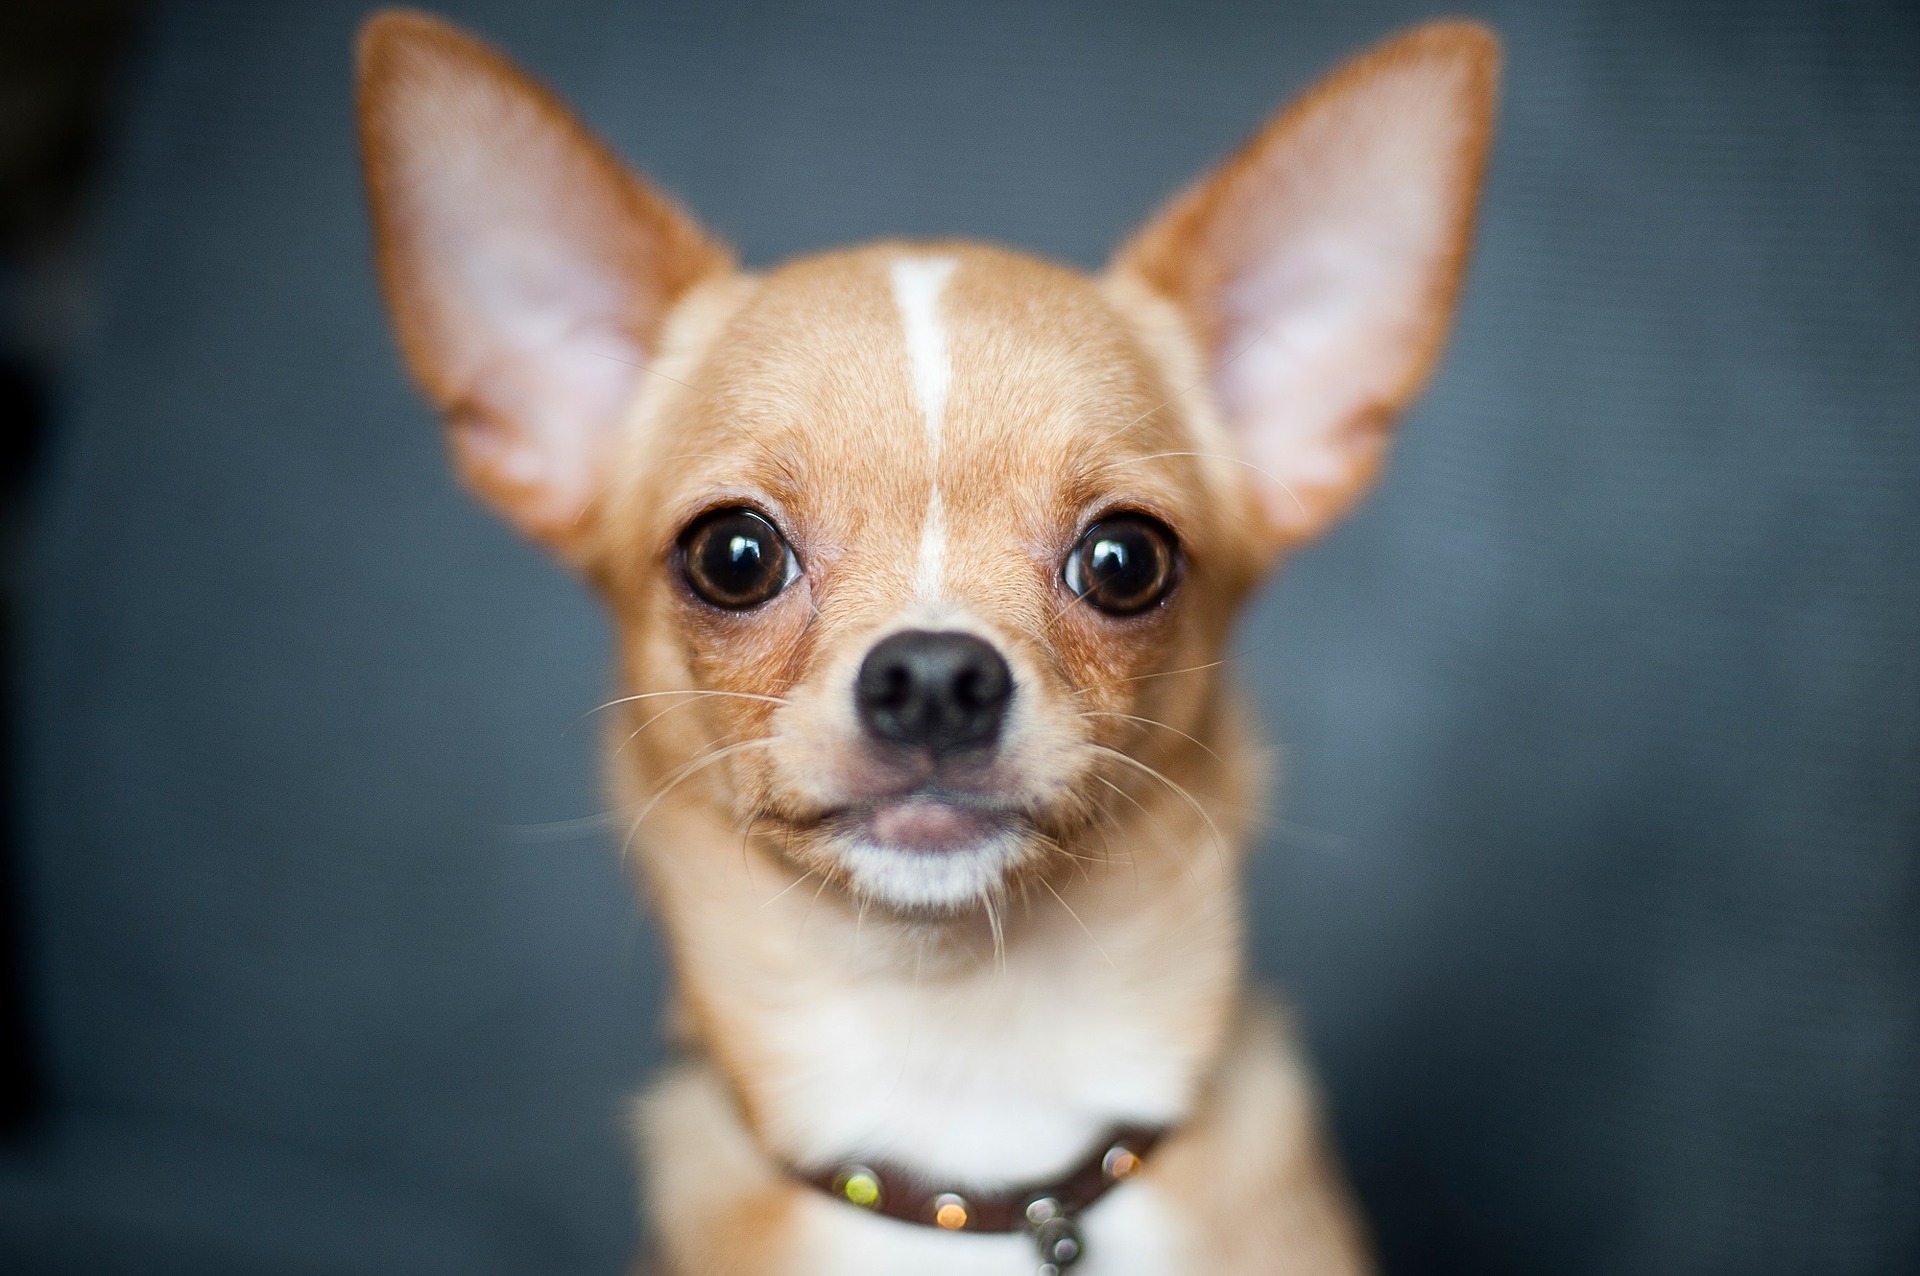 Chihuahua este considerată cea mai mică rasă de câini domestici din lume.